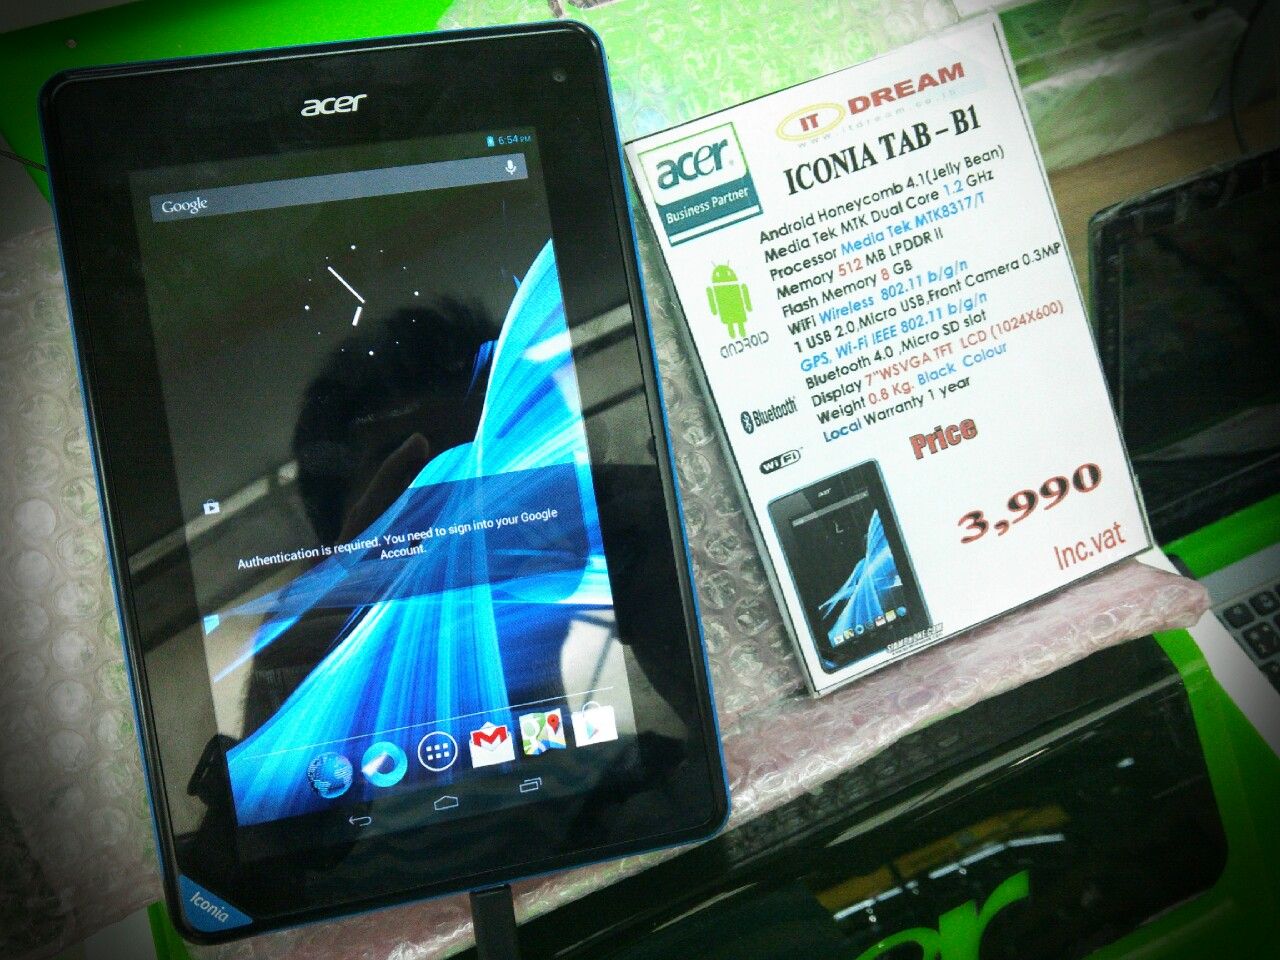 วางขายแล้ว Acer Iconia B1 แท็บเลทราคาประหยัด 3990 บาท